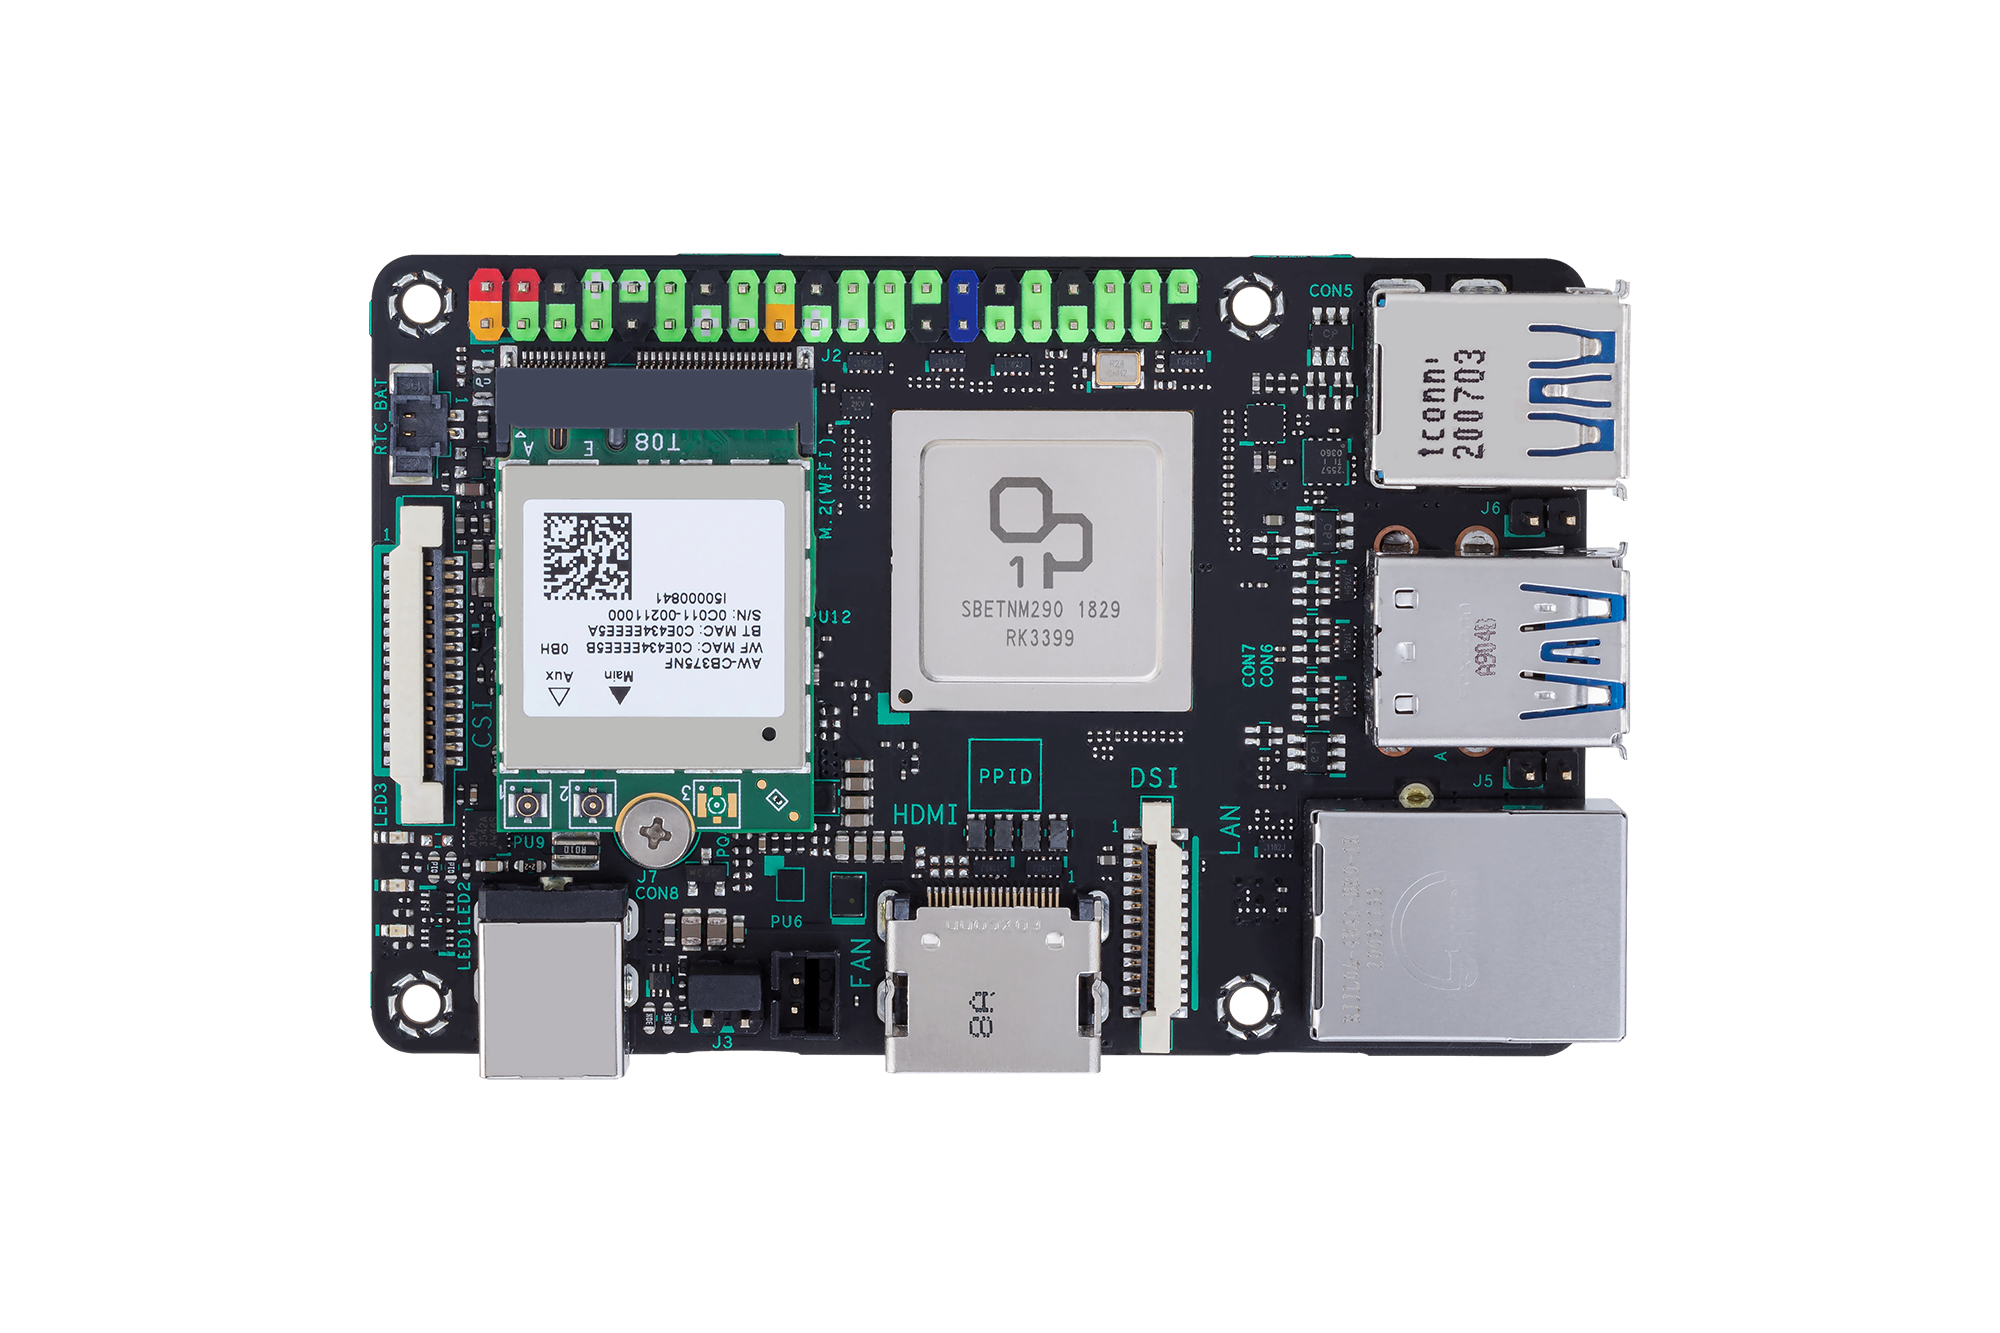 ASUS Tinker Board 2S - Einplatinenrechner - Rockchip RK3399